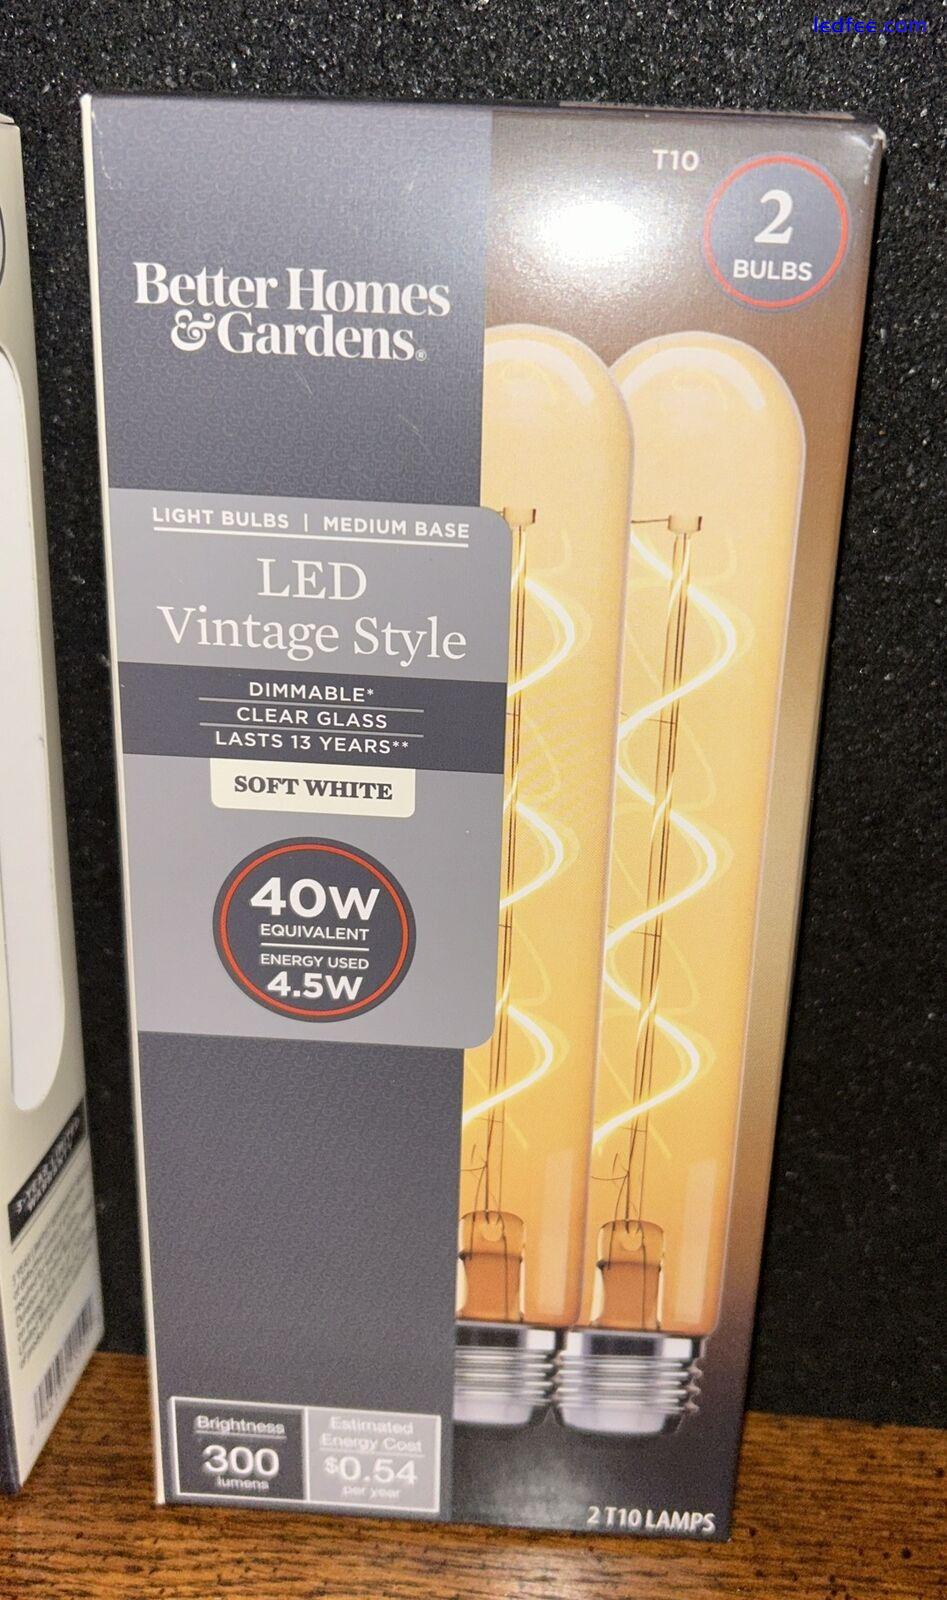 Better Homes & Gardens LED Tube Vintage Style Light Bulb, T10 40 Watts, 2 Packs 1 